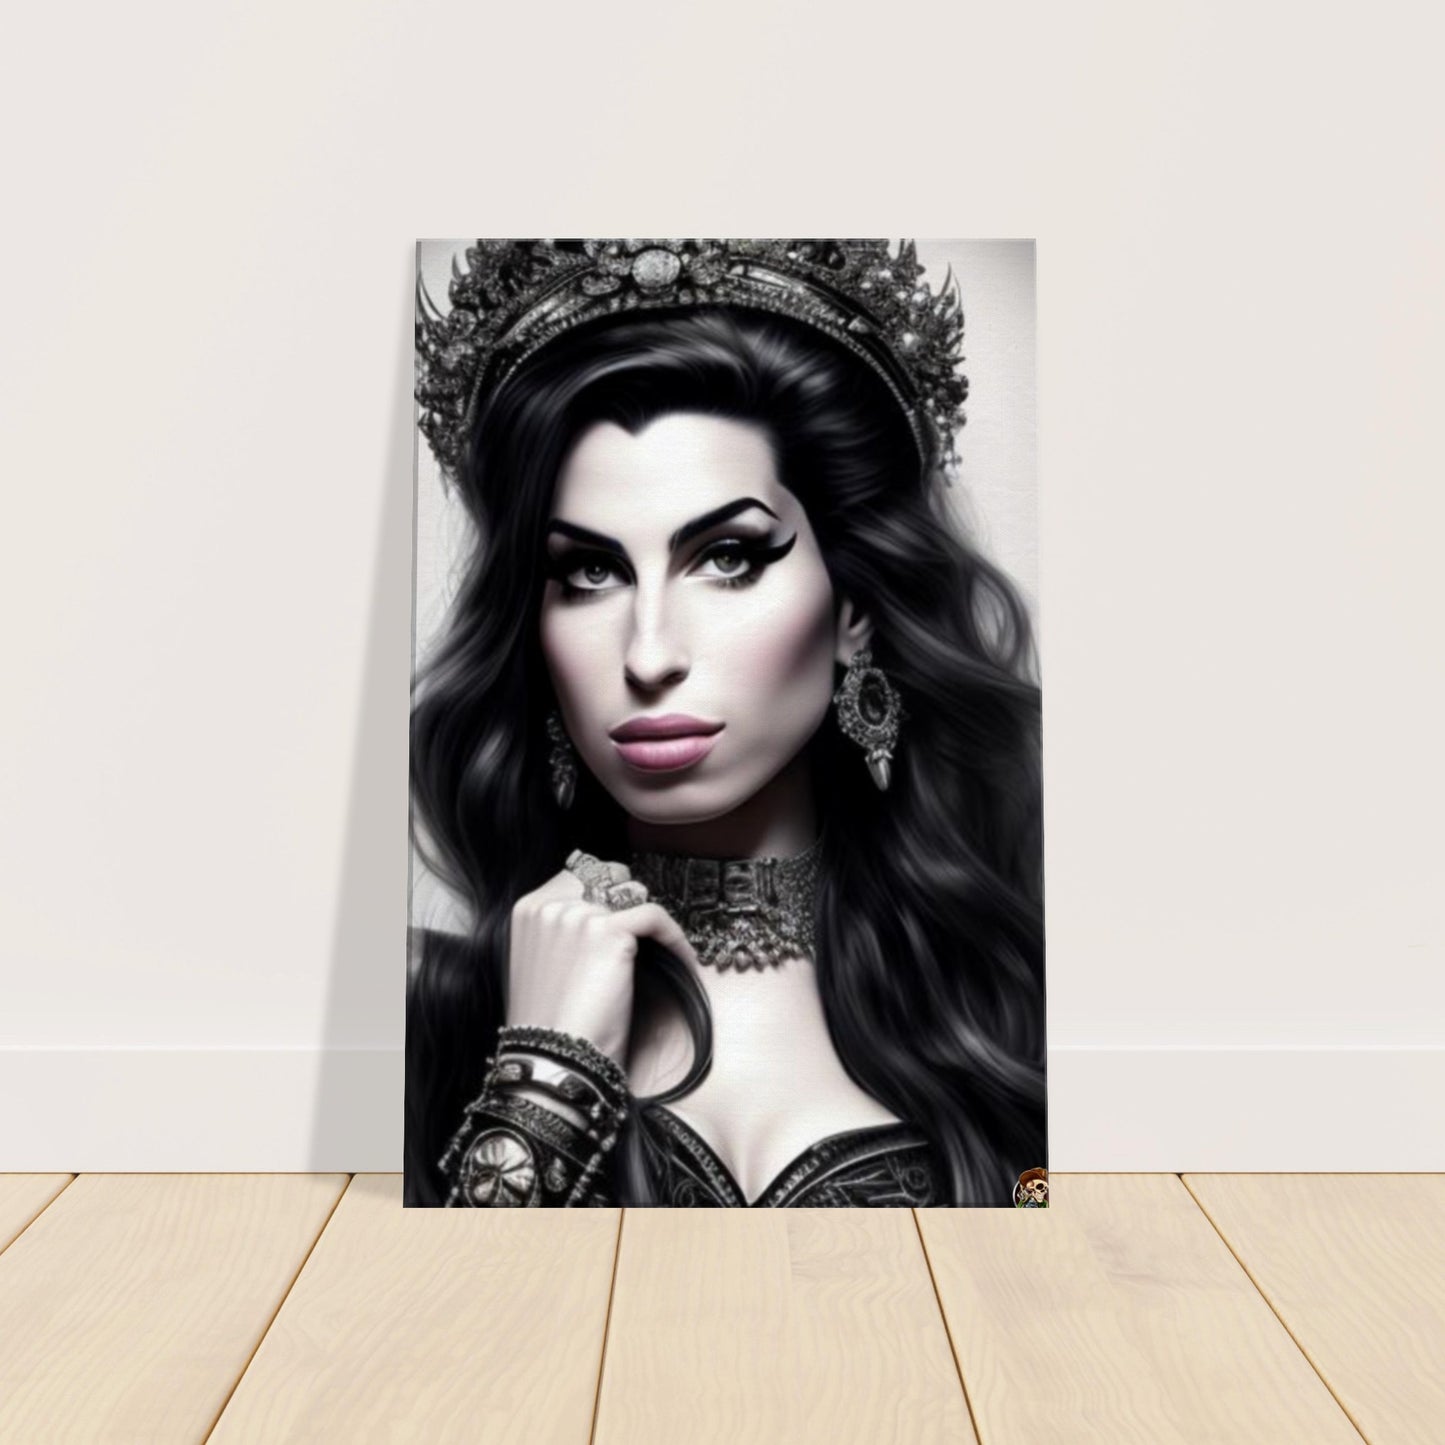 Amy Winehouse Canvas created by Ötzi Frosty